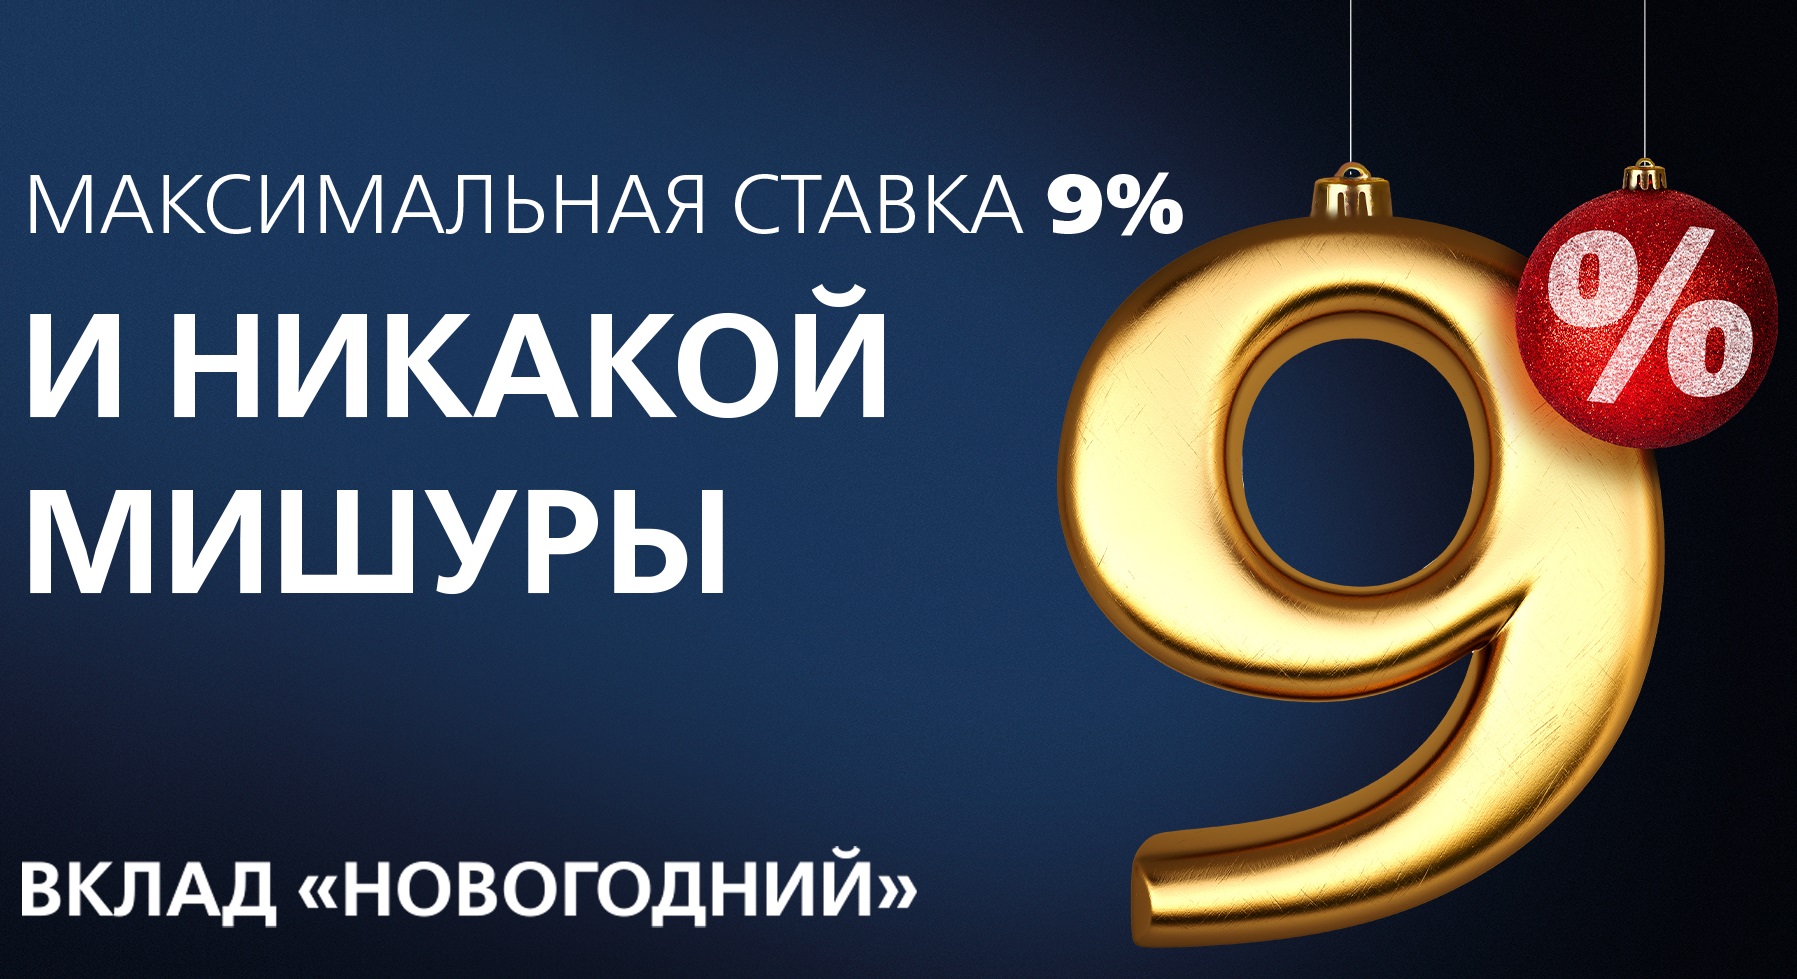 Новикомбанк запускает «Новогодний» вклад со ставкой до 9%